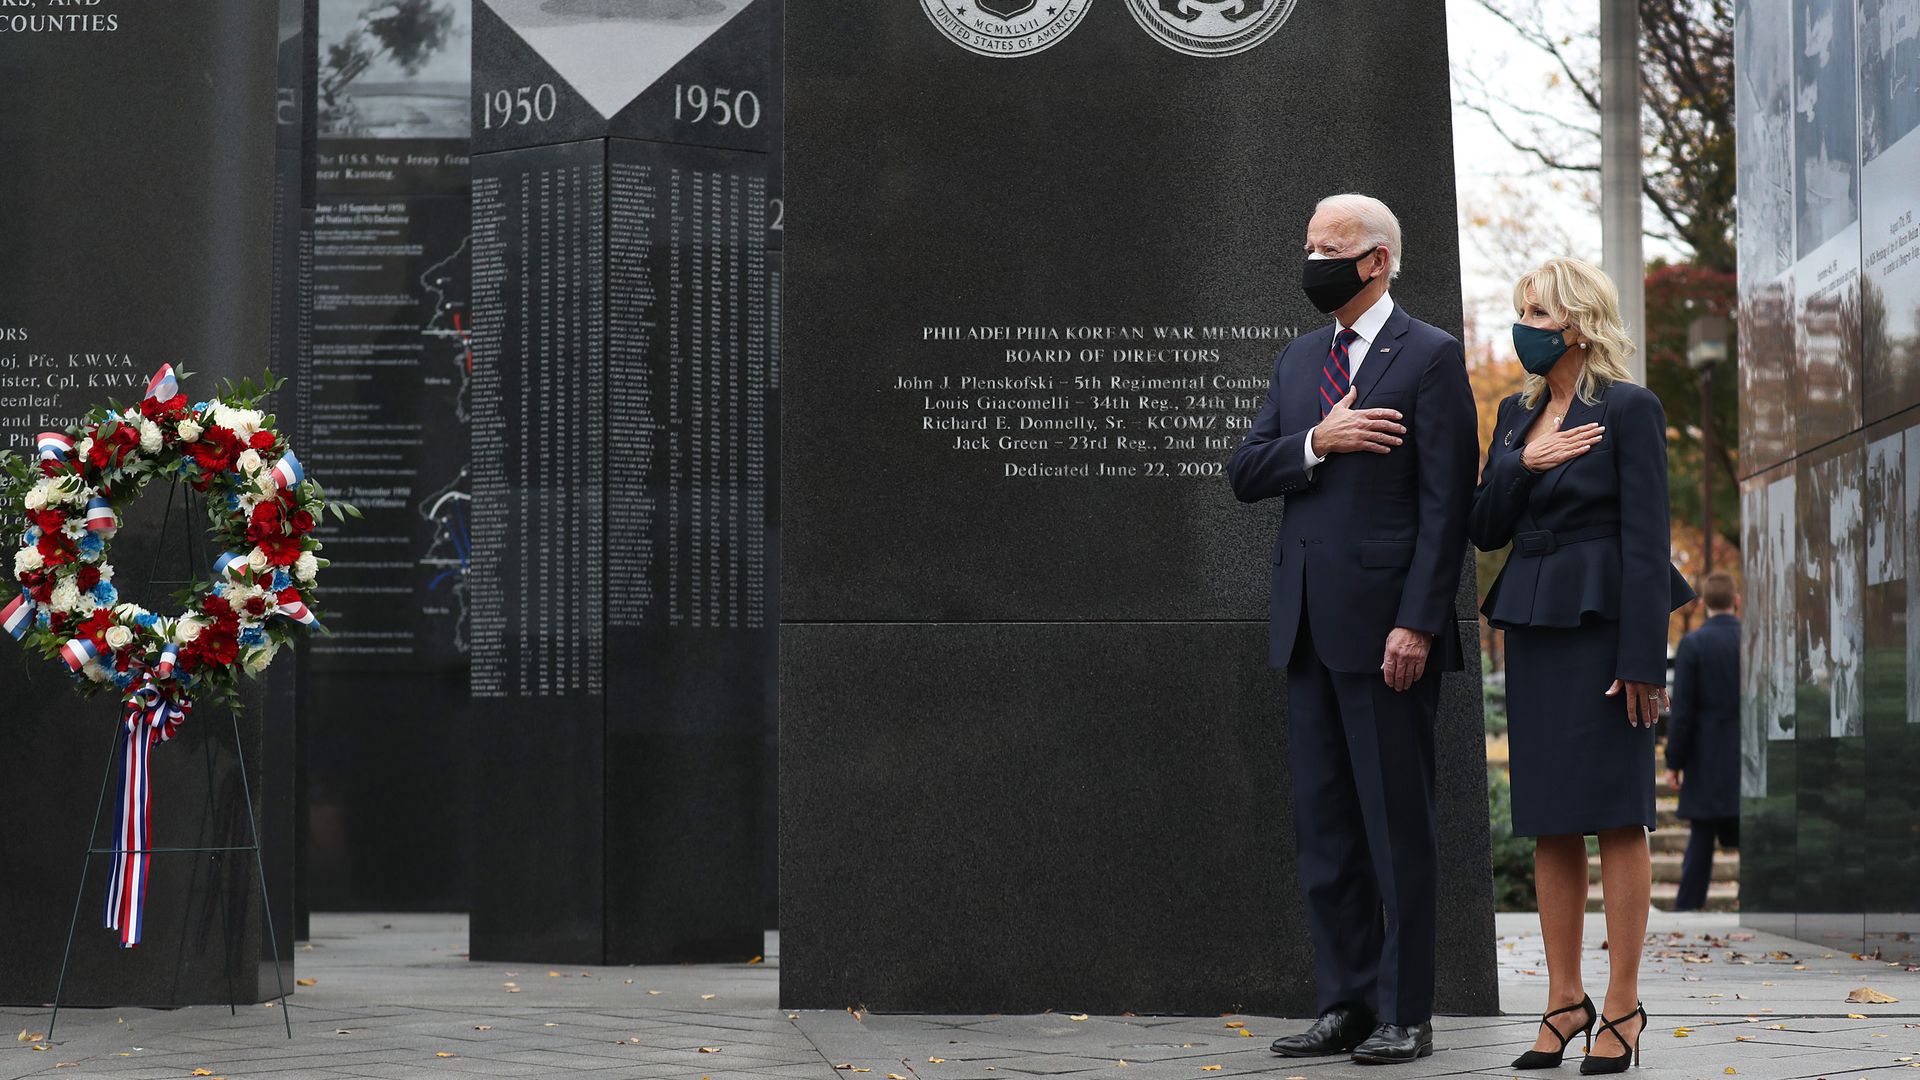 Picture of Joe Biden and Jill Biden in the Philadelphia Korean War Memorial 